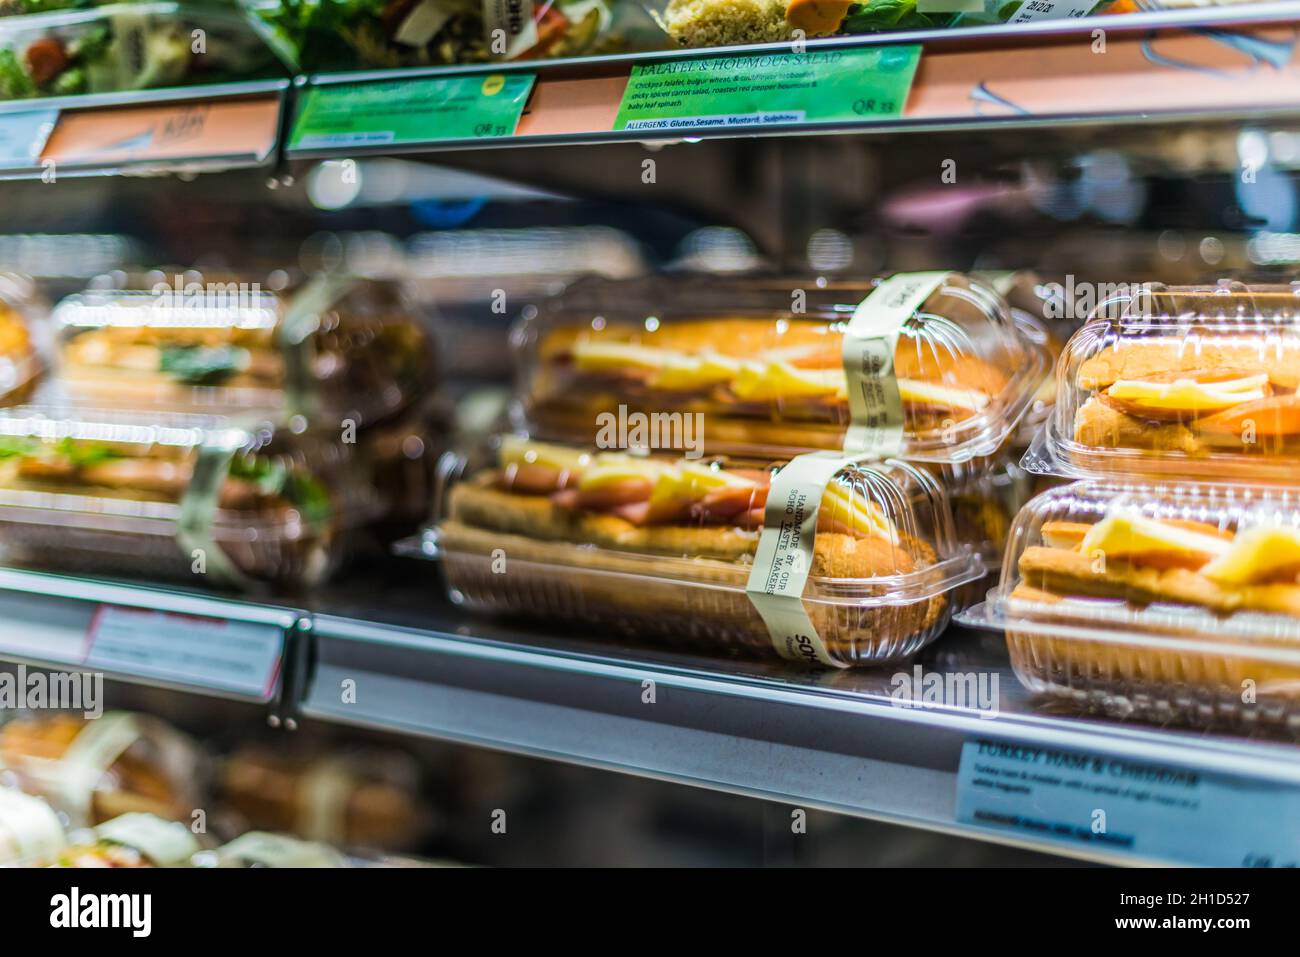 DOHA, KATAR - 28. FEB 2020: Vorverpackte Lebensmittel werden in einem  handelsüblichen Kühlschrank angezeigt Stockfotografie - Alamy